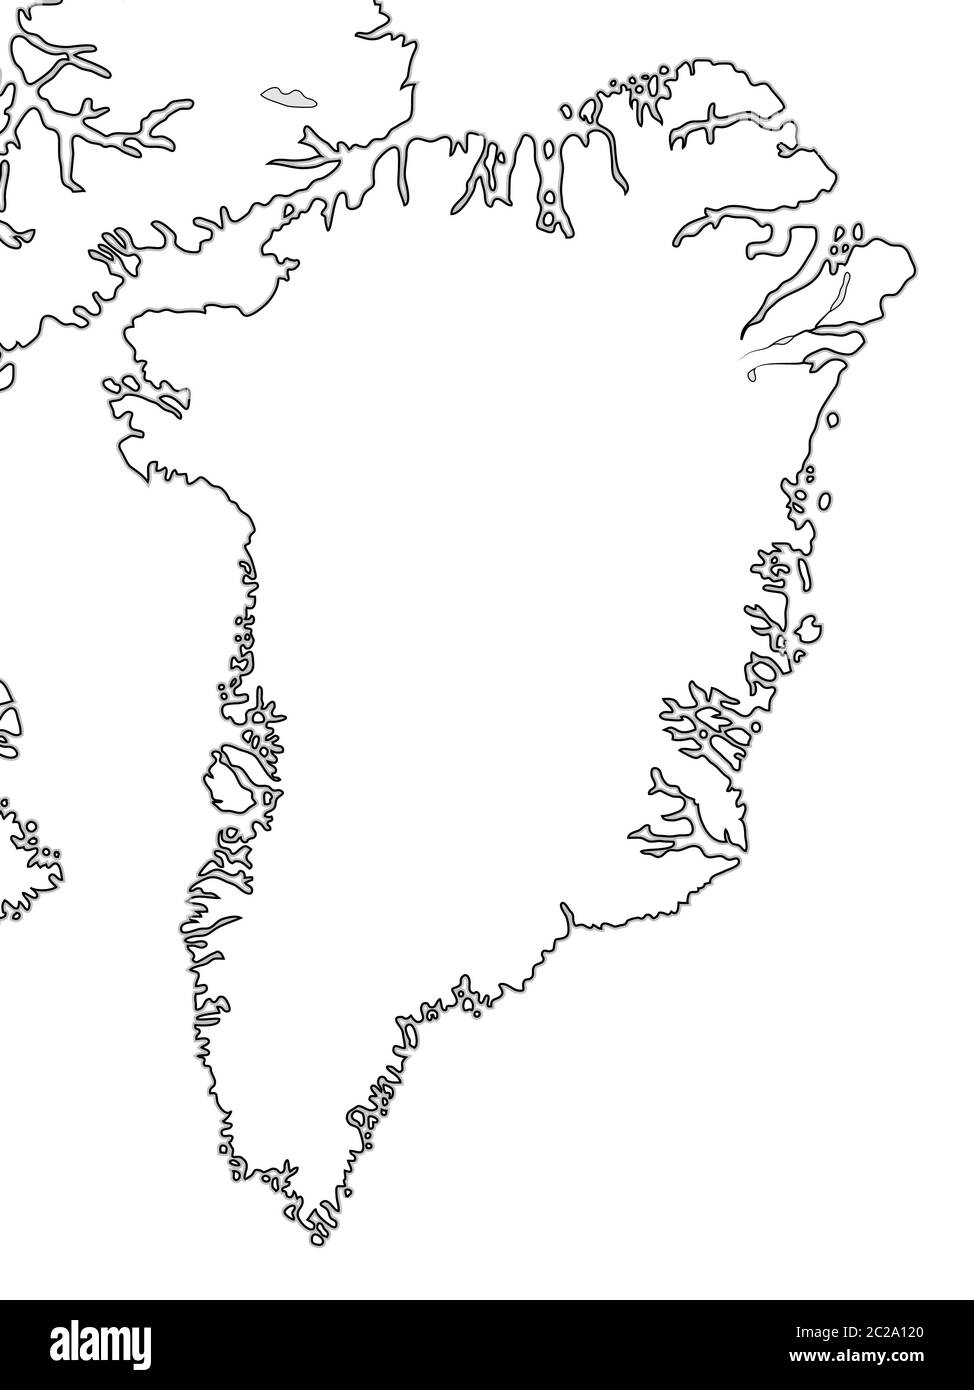 Weltkarte von GRÖNLAND: Grönland, Arktisches Archipel, Atlantischer Ozean. Geografische Karte. Stockfoto